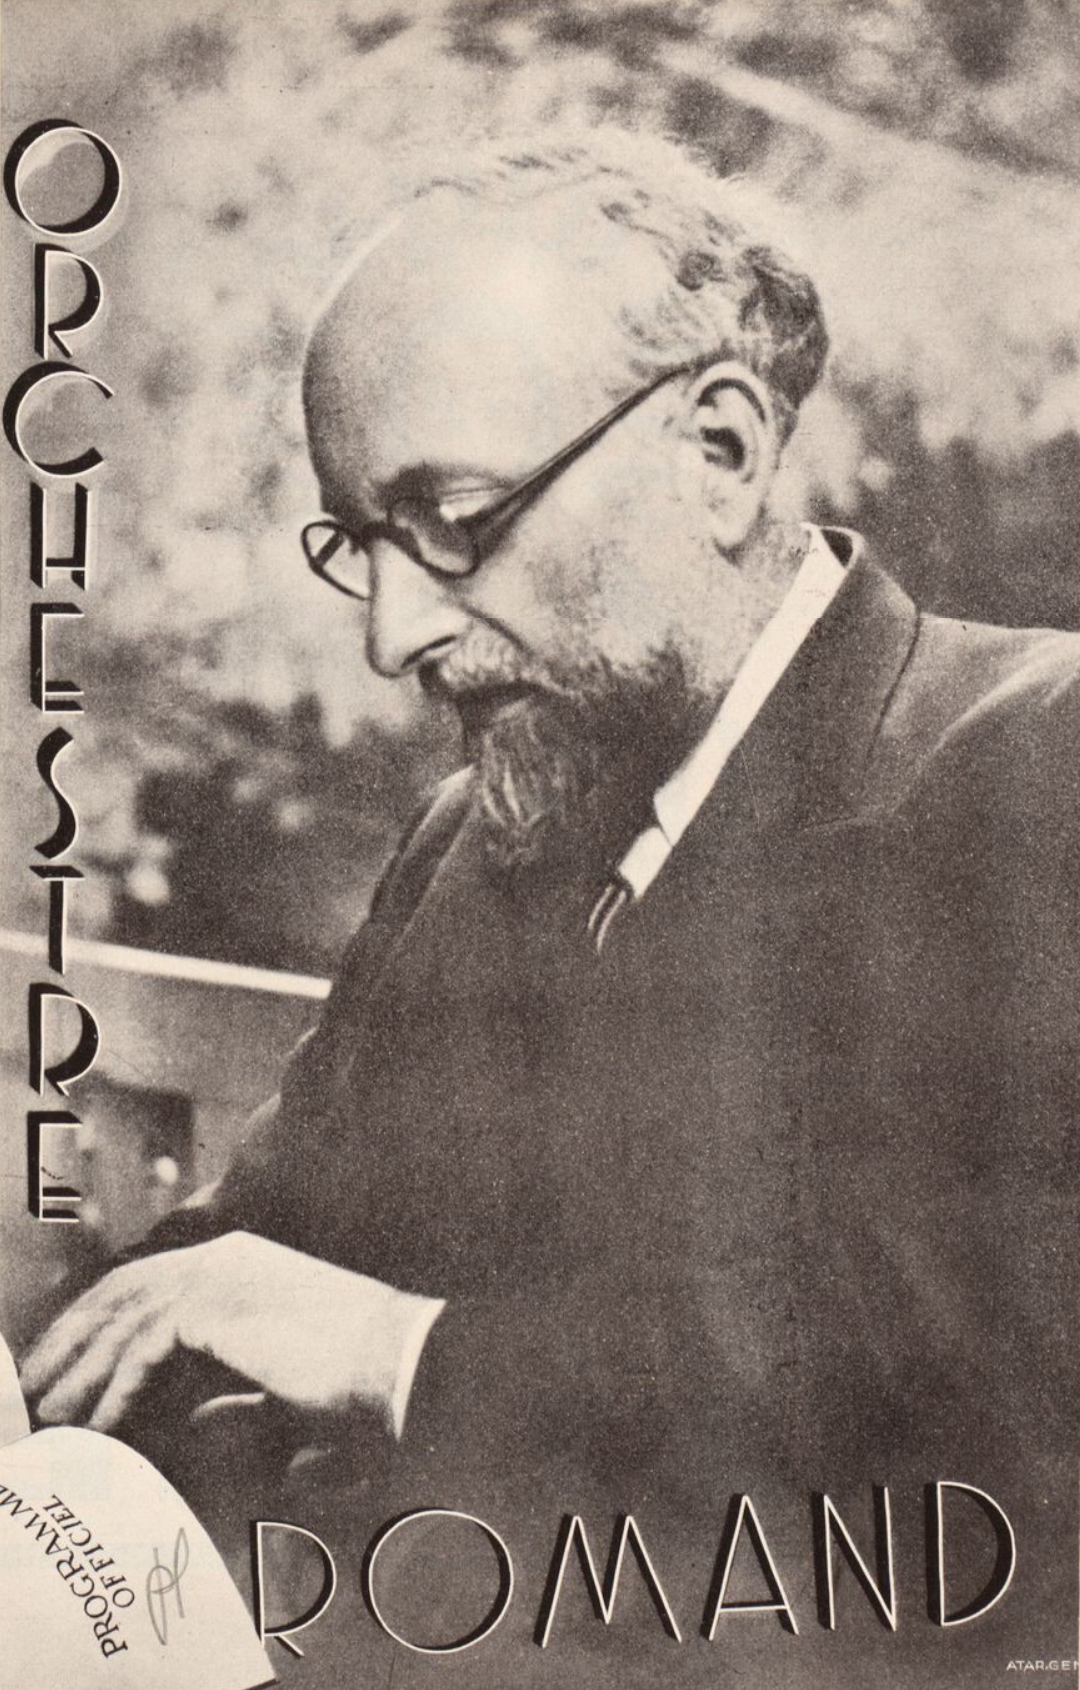 Ernest Ansermet vers 1936, photo publiée en couverture d'un programme de concert, 3 avril 1936, cliquer pour une vue agrandie